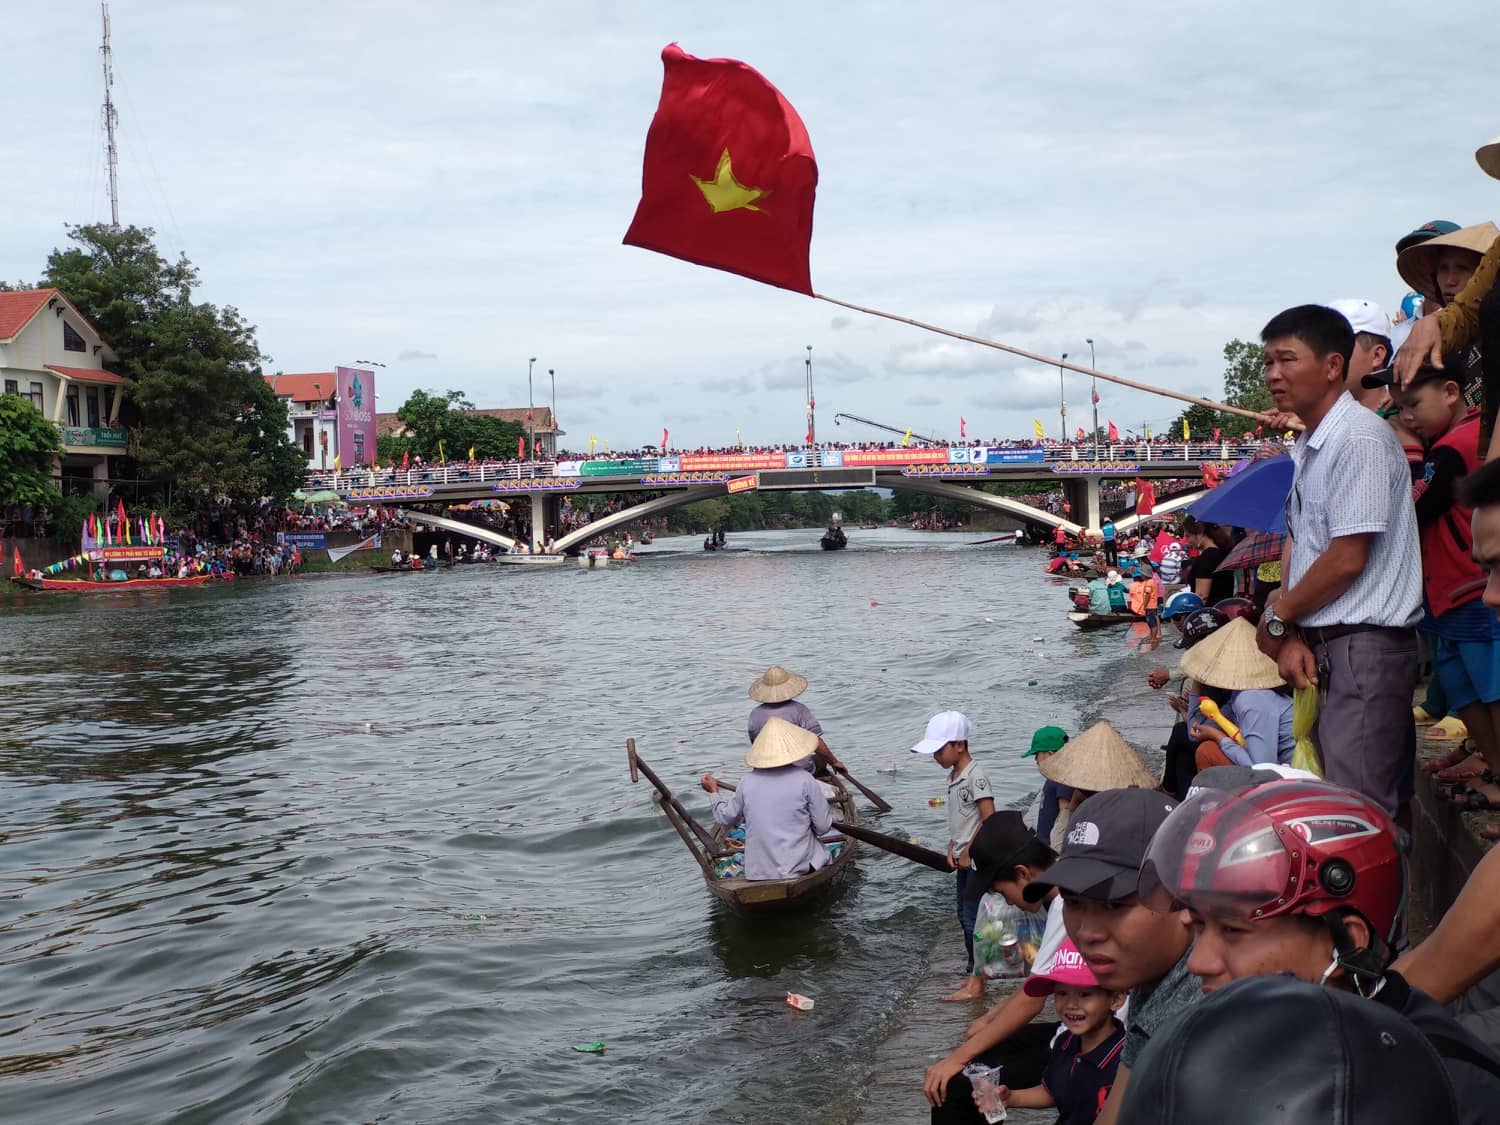 Lễ hội bơi đua thuyền truyền thống trên sông Kiến Giang là sự kiện lớn nhất trong năm của huyện Lệ Thủy, tỉnh Quảng Bình. Đây là Lễ hội cấp Quốc gia của tỉnh Quảng Bình.